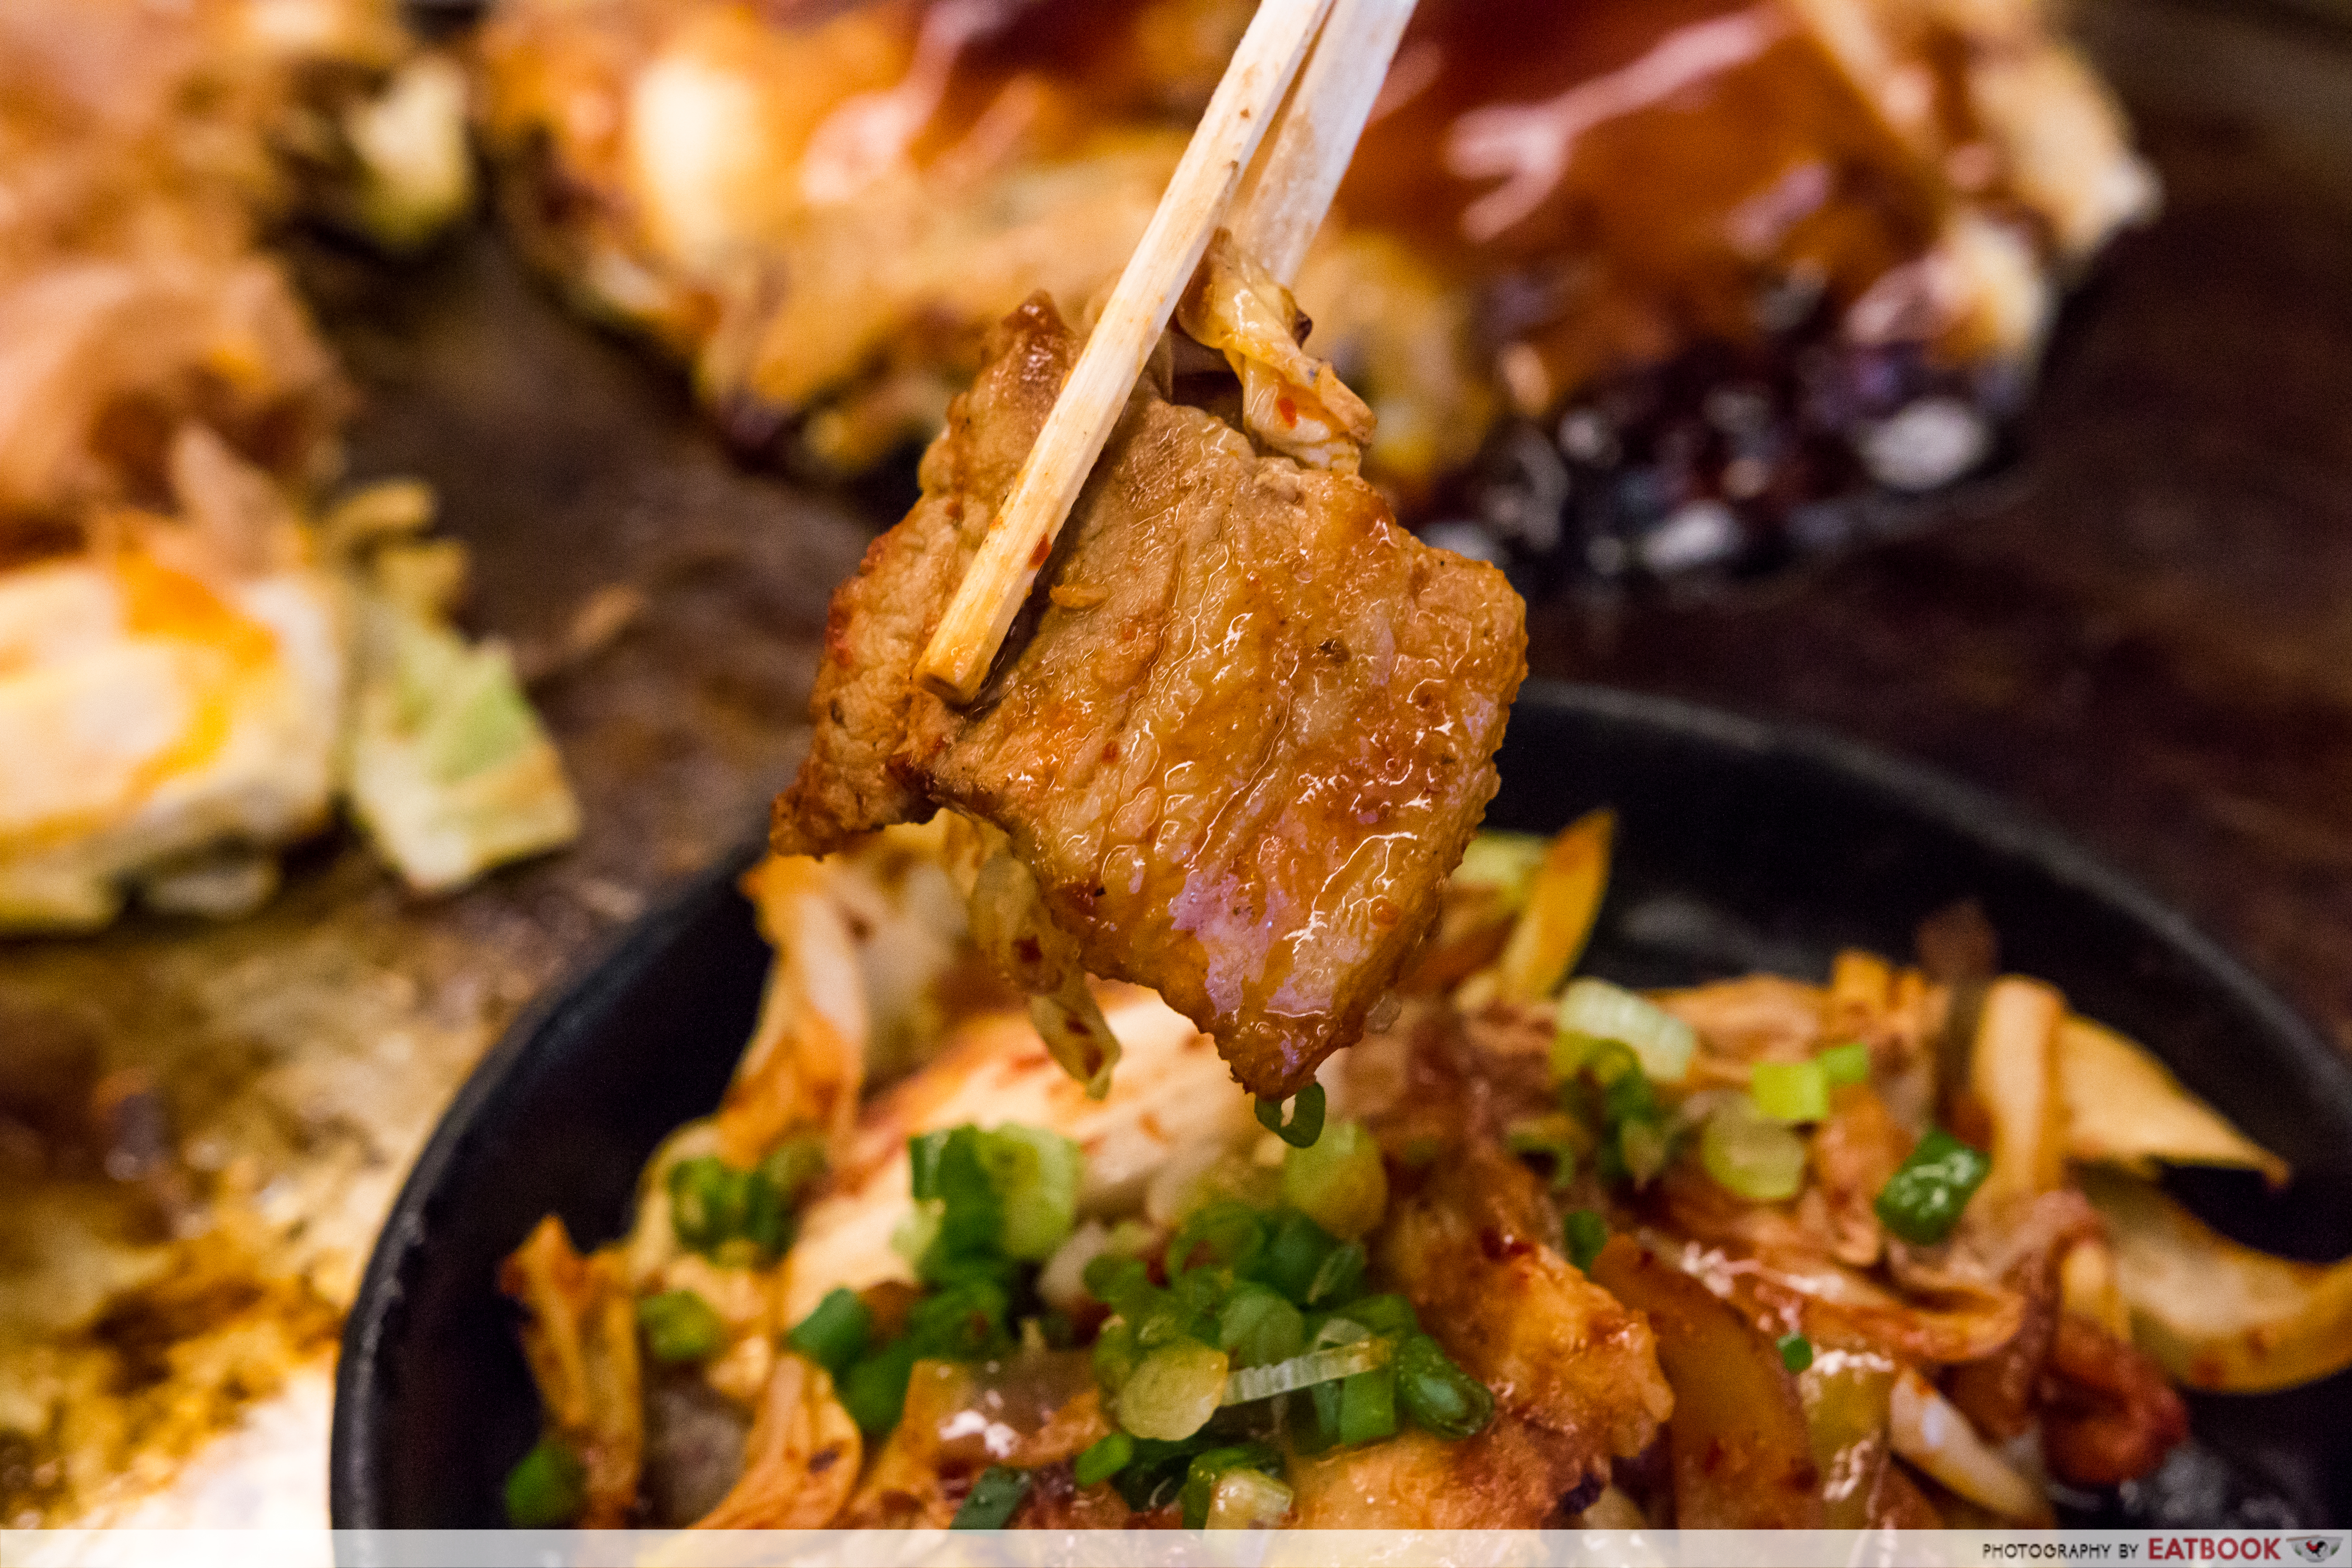 Fugetsu- kimchi pork